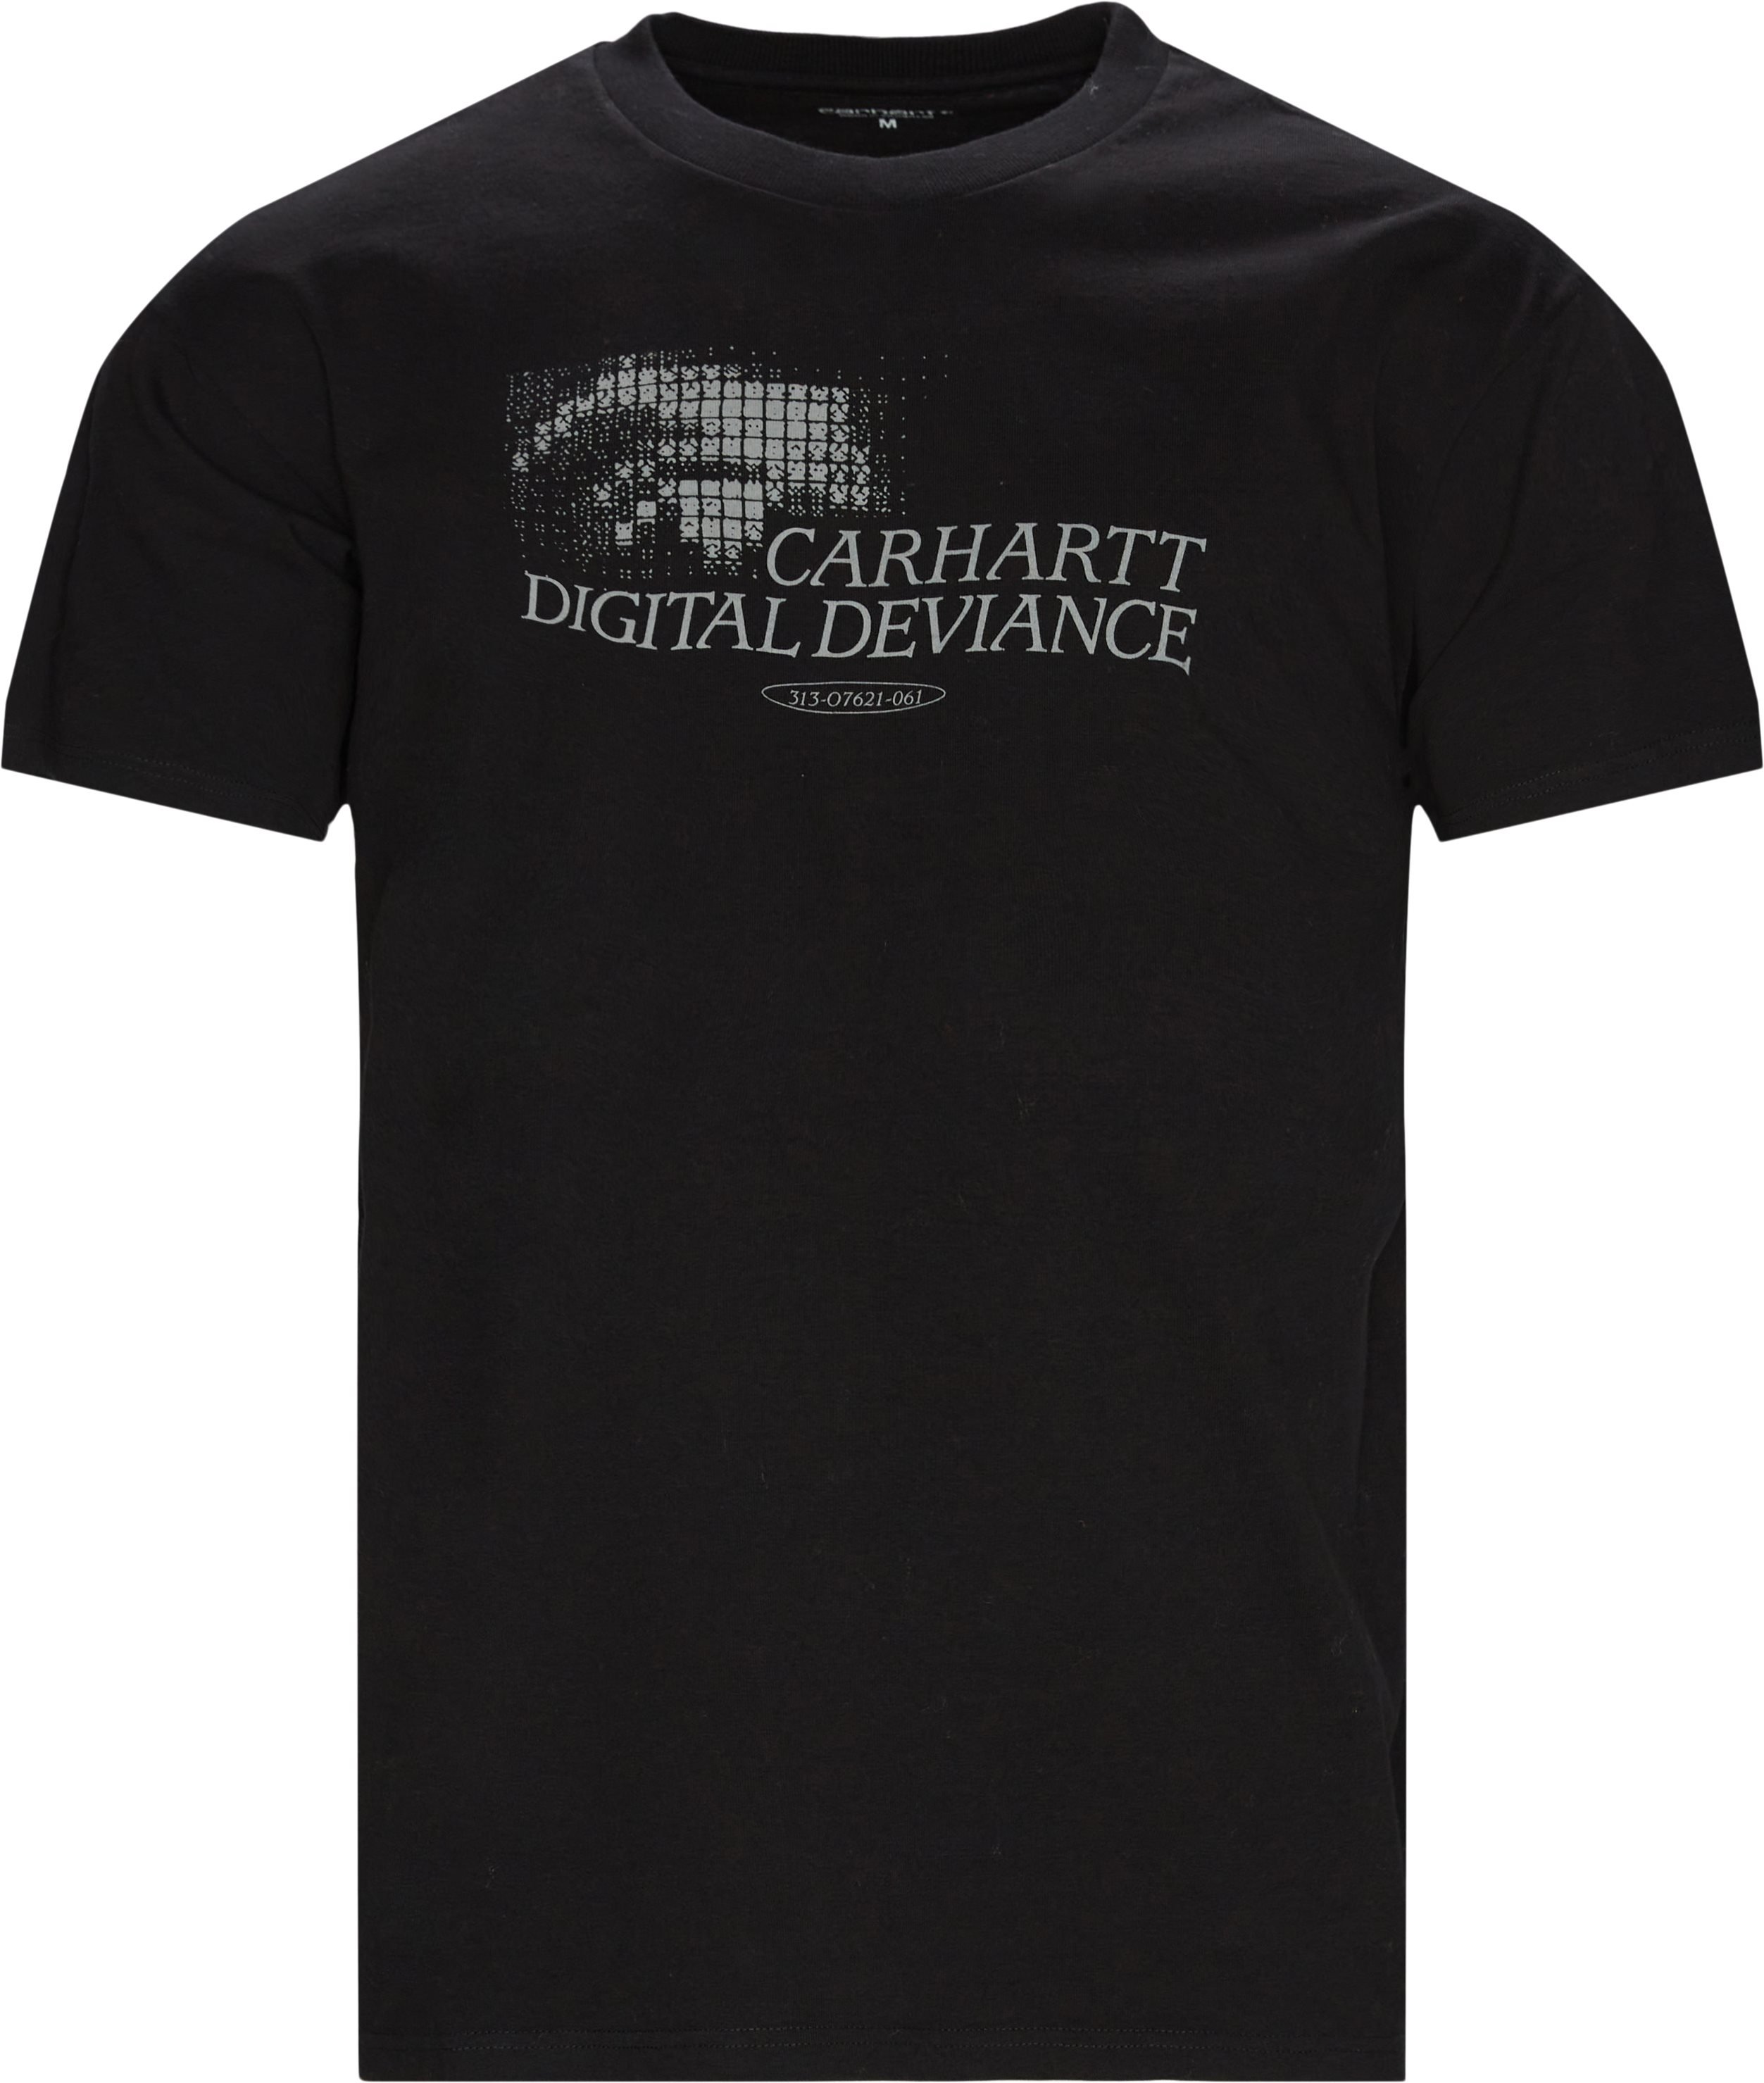 Digital Deviance Print Tee - T-shirts - Regular fit - Black